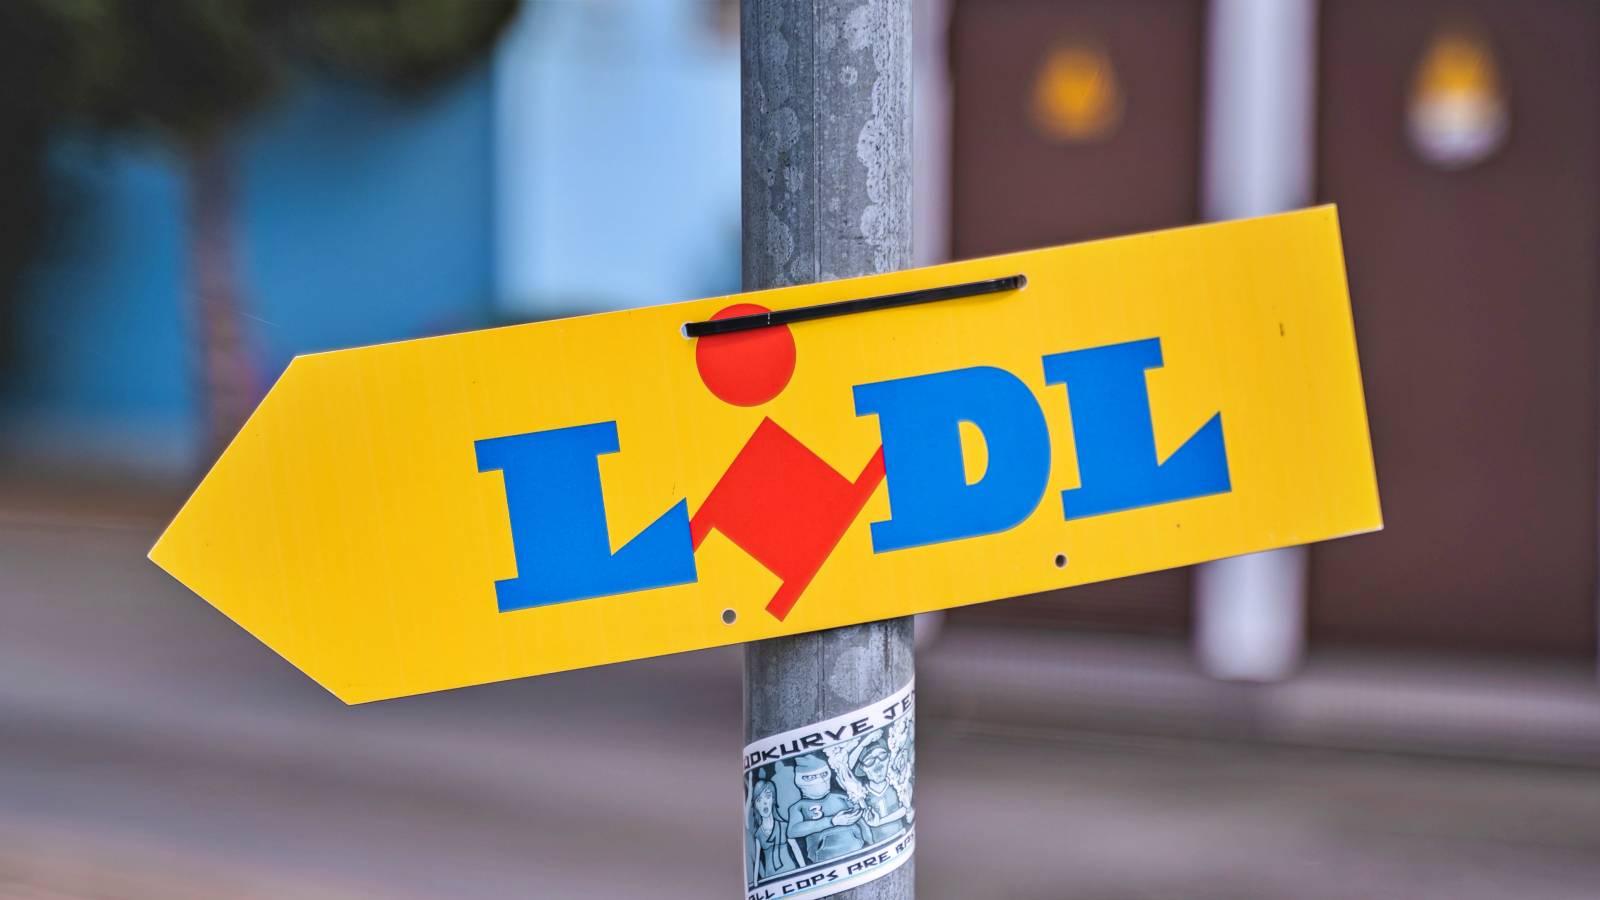 Offizielle Ankündigungen von LIDL Rumänien LAST MINUTE Kunden aus Rumänien